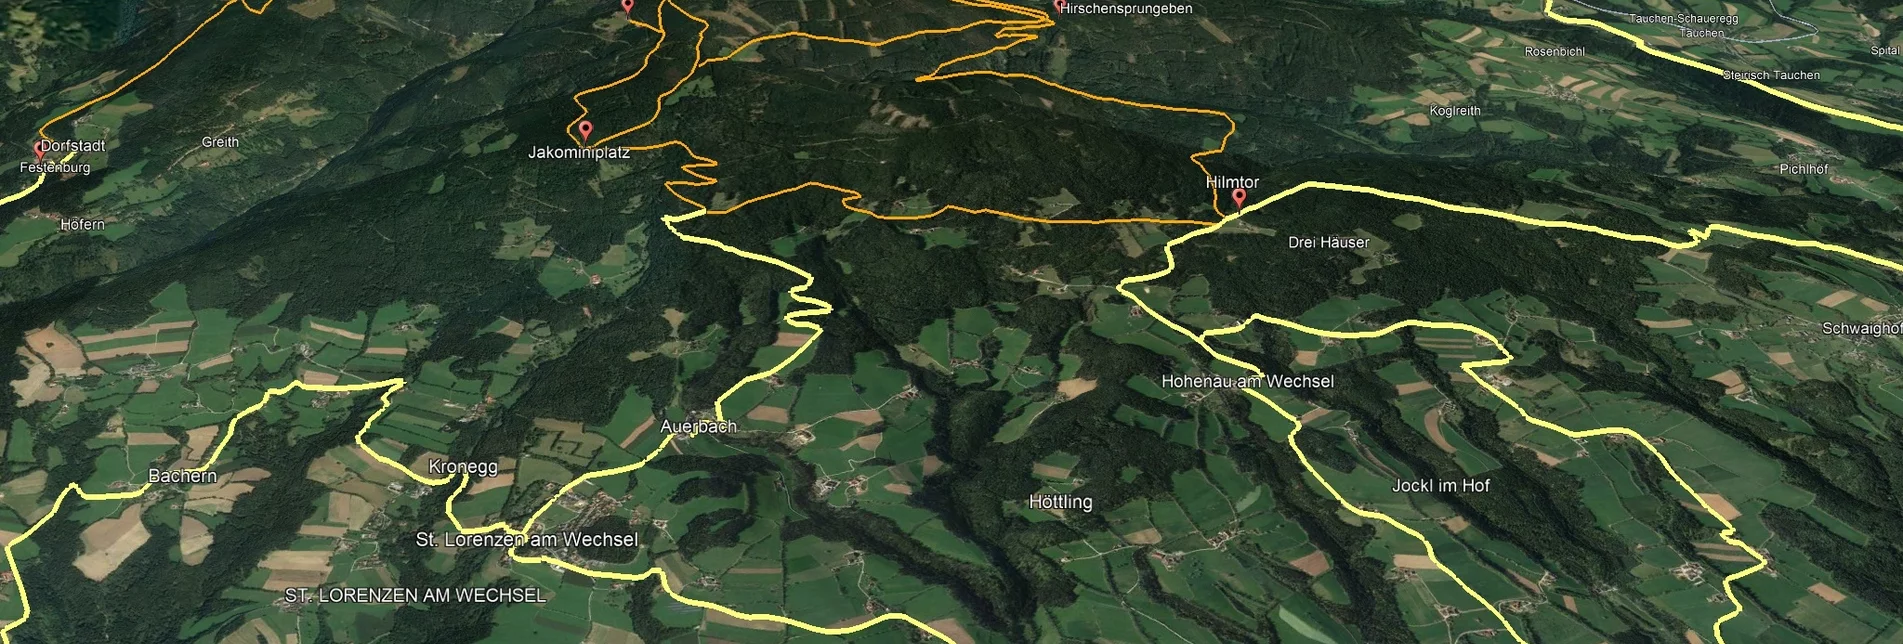 Mountain Biking PREVIEW Styrian Wexl Trails - Irrbühel Route - Touren-Impression #1 | © Verein Tourismusentwicklung Steirischer Wechsel